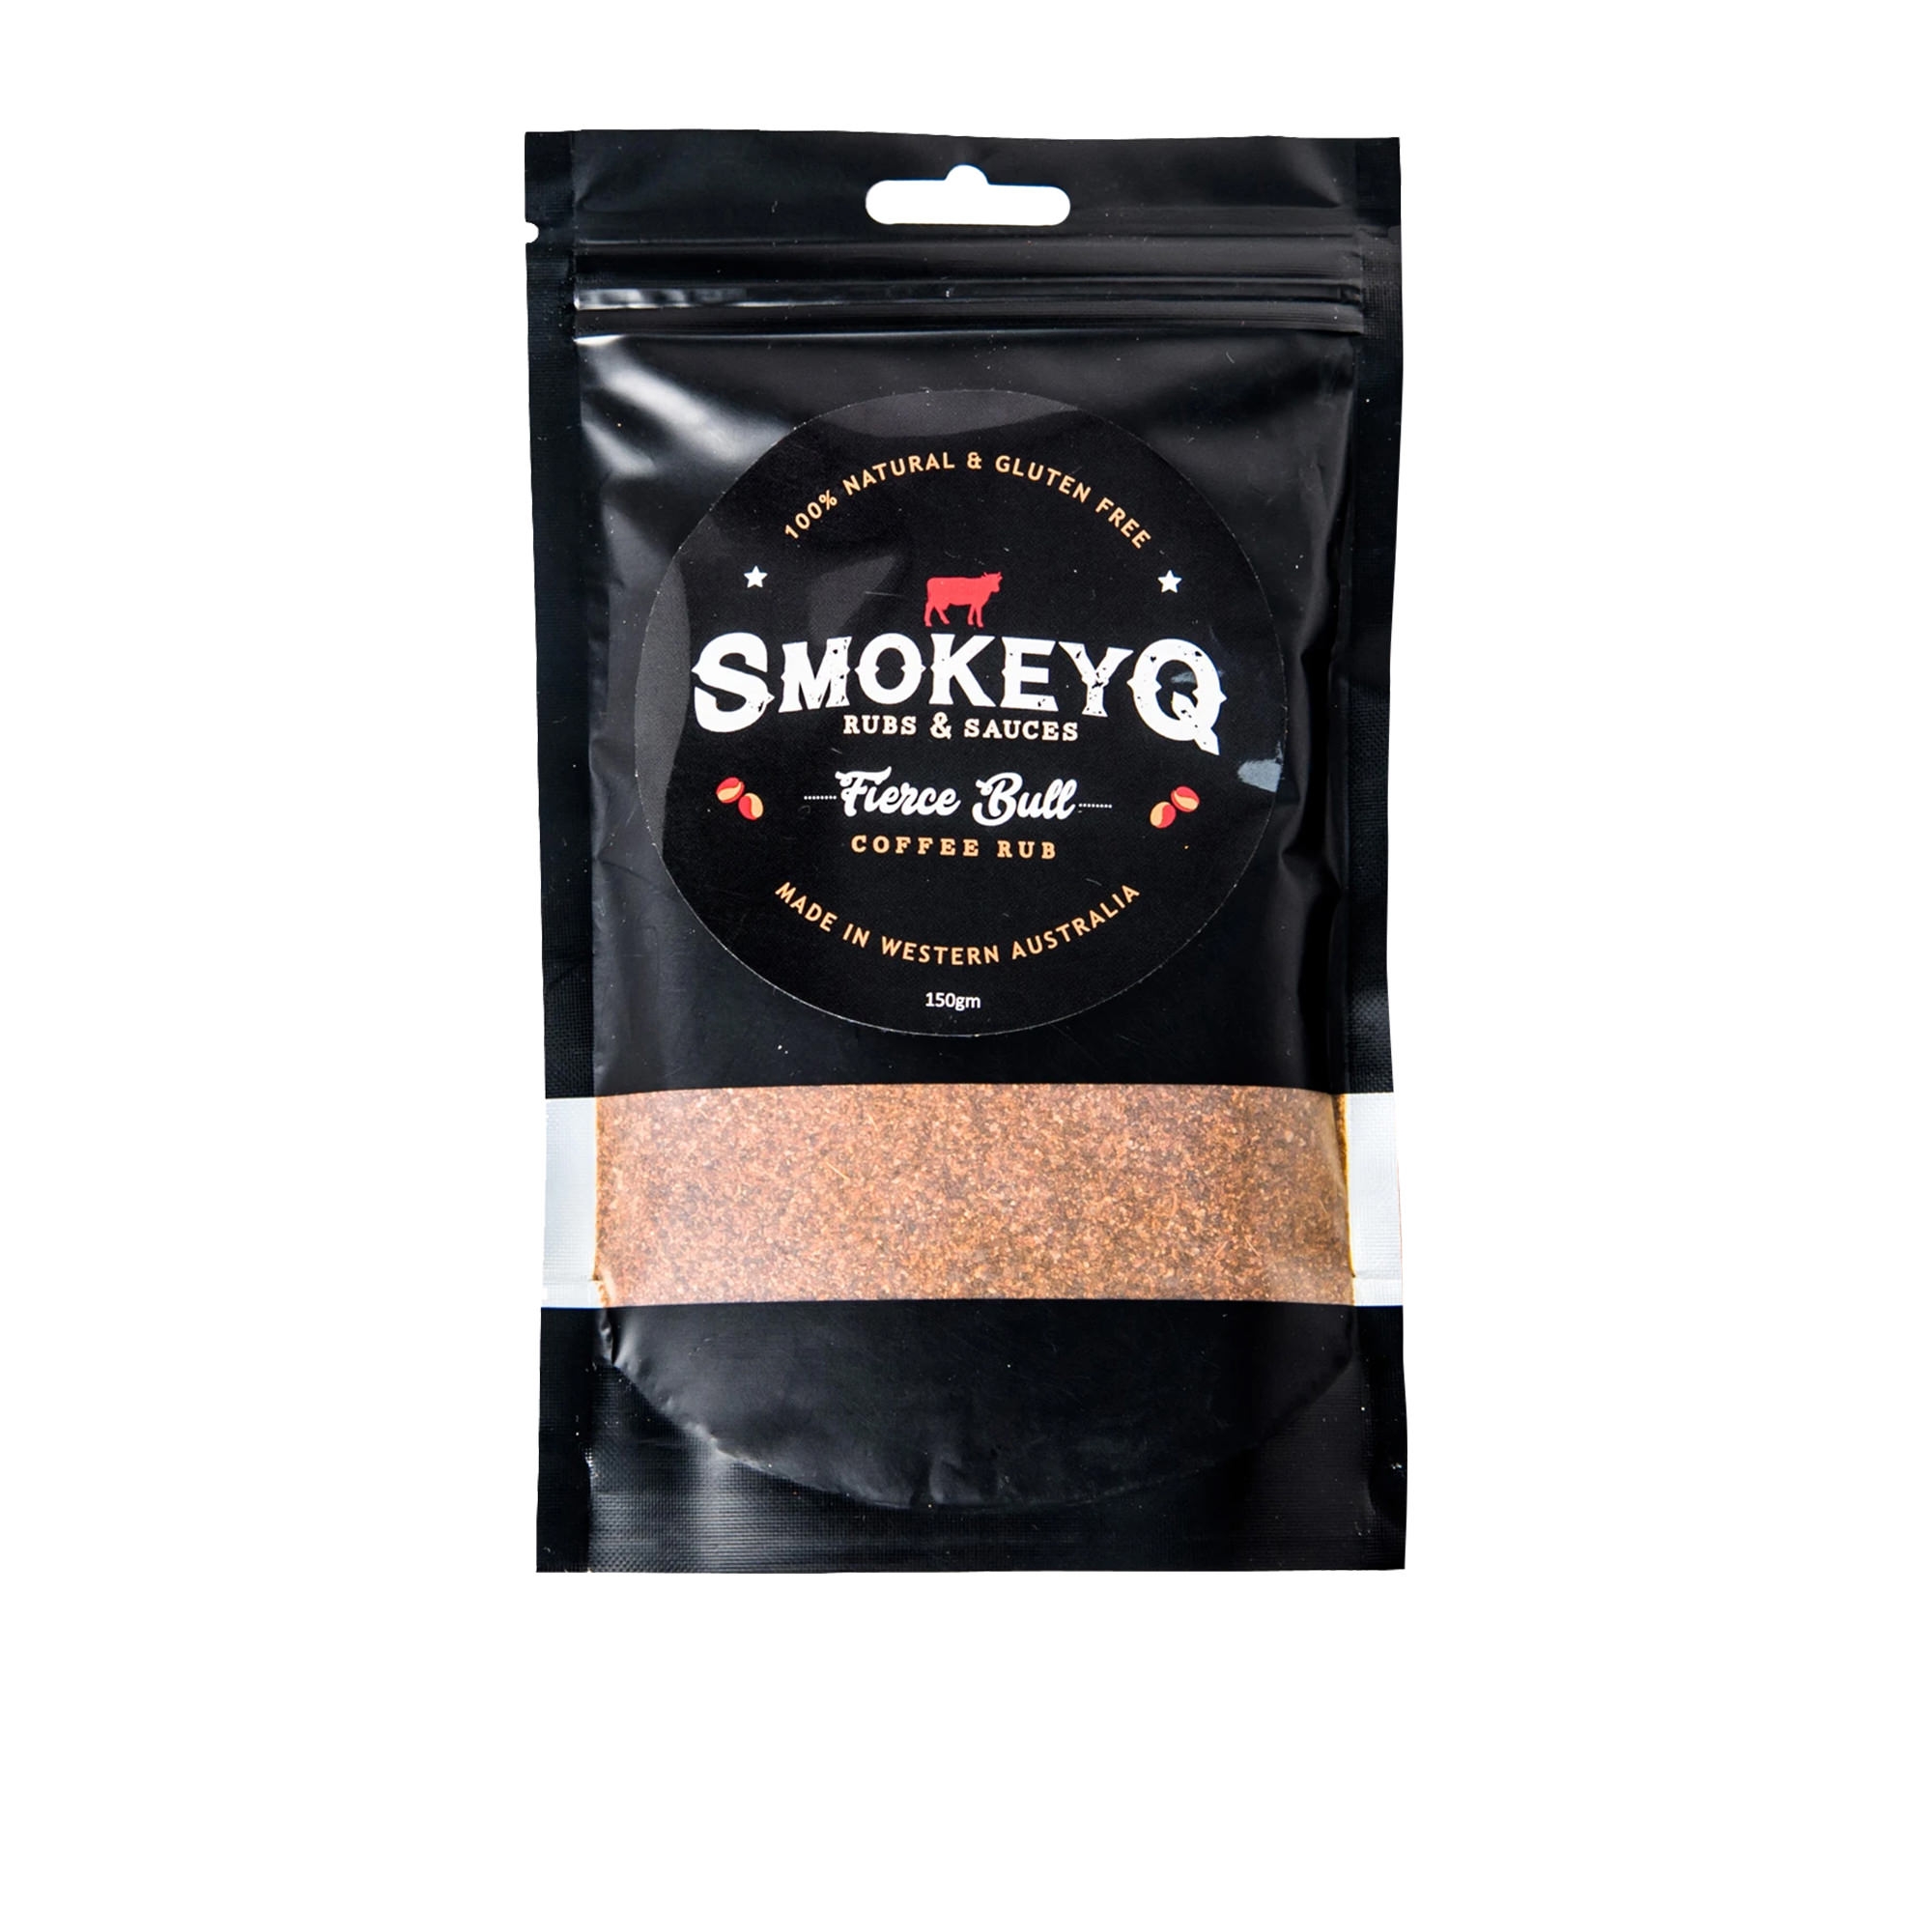 Smokey Q Fierce Bull Coffee Rub 150g Image 1